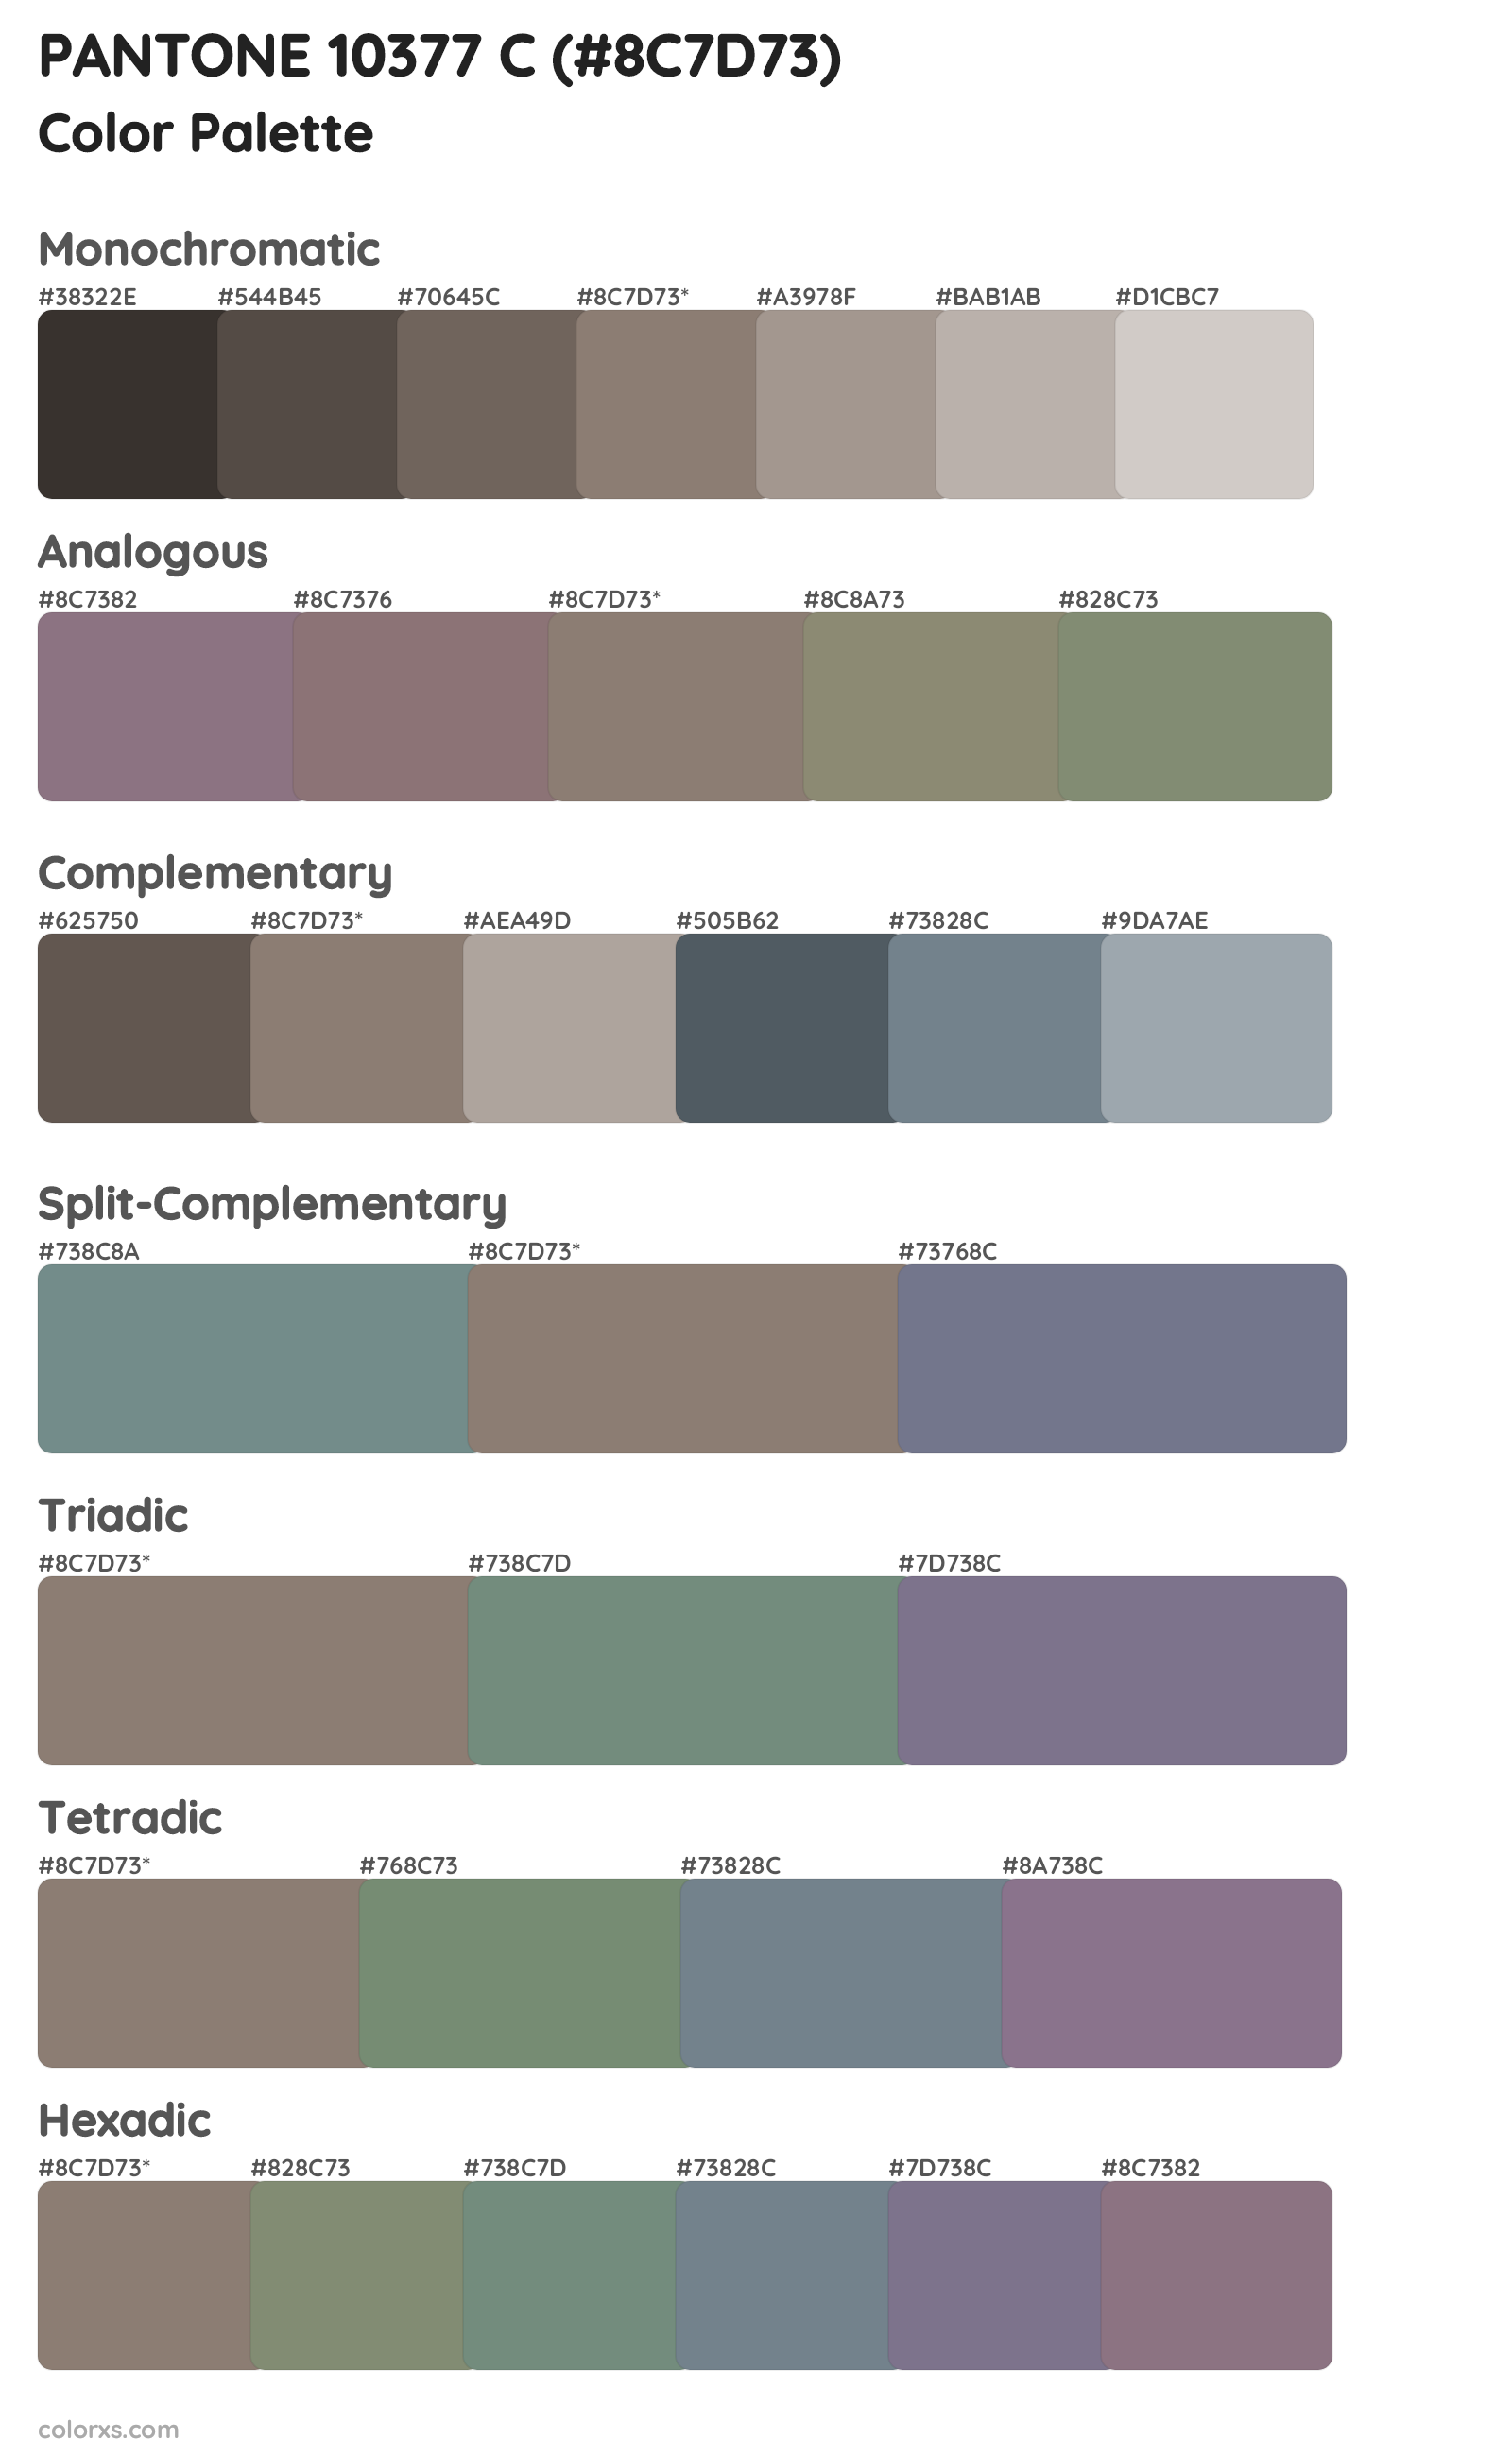 PANTONE 10377 C Color Scheme Palettes